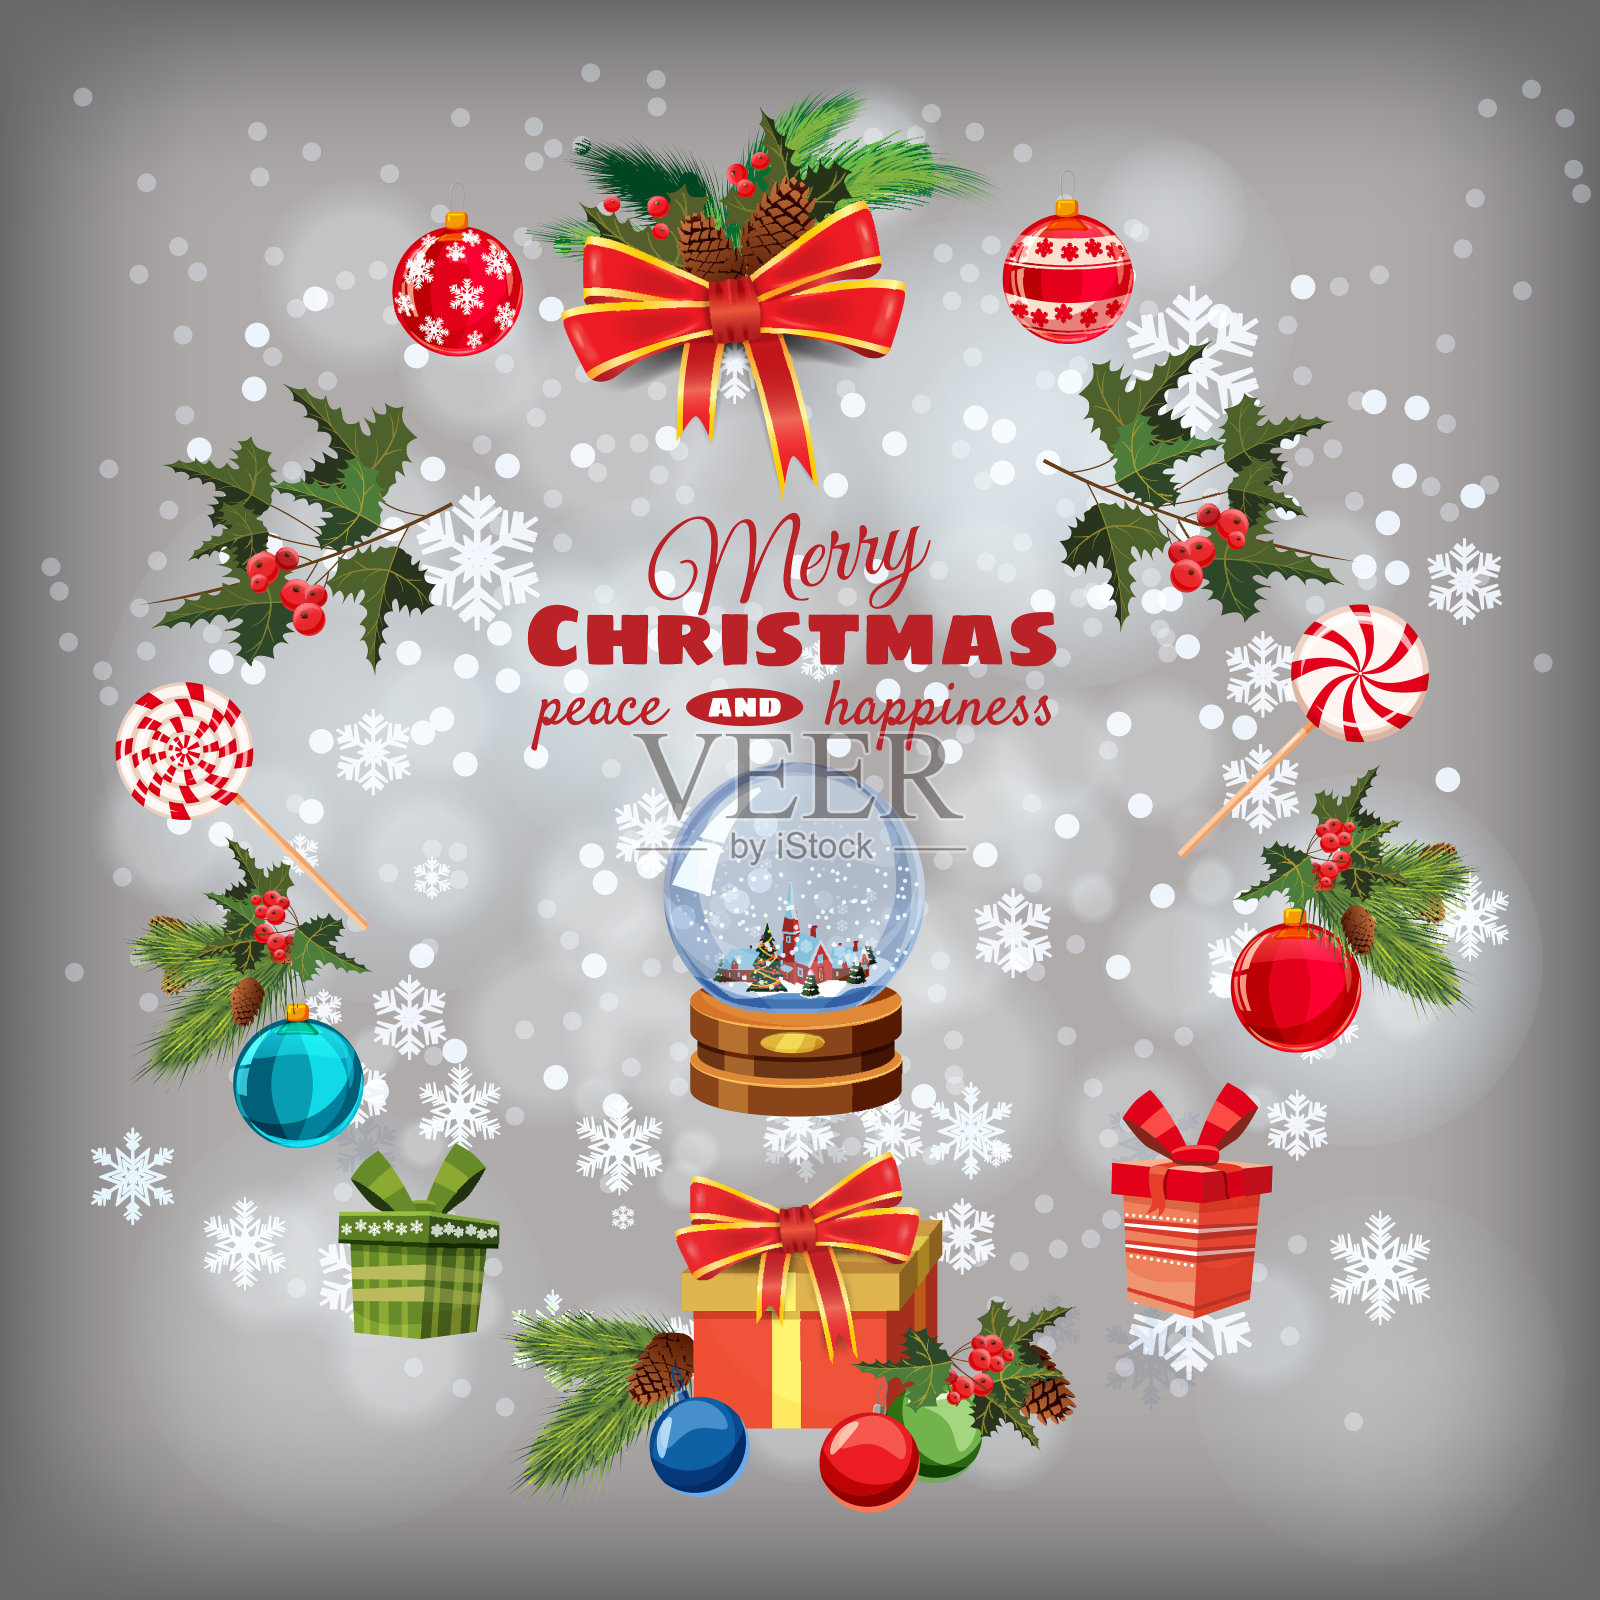 贺卡圣诞设置松枝，装饰品，糖果，丝带，雪花球，礼物盒，圣诞球。现实，脆弱的矢量元素设计贺卡，横幅，孤立，插图设计模板素材